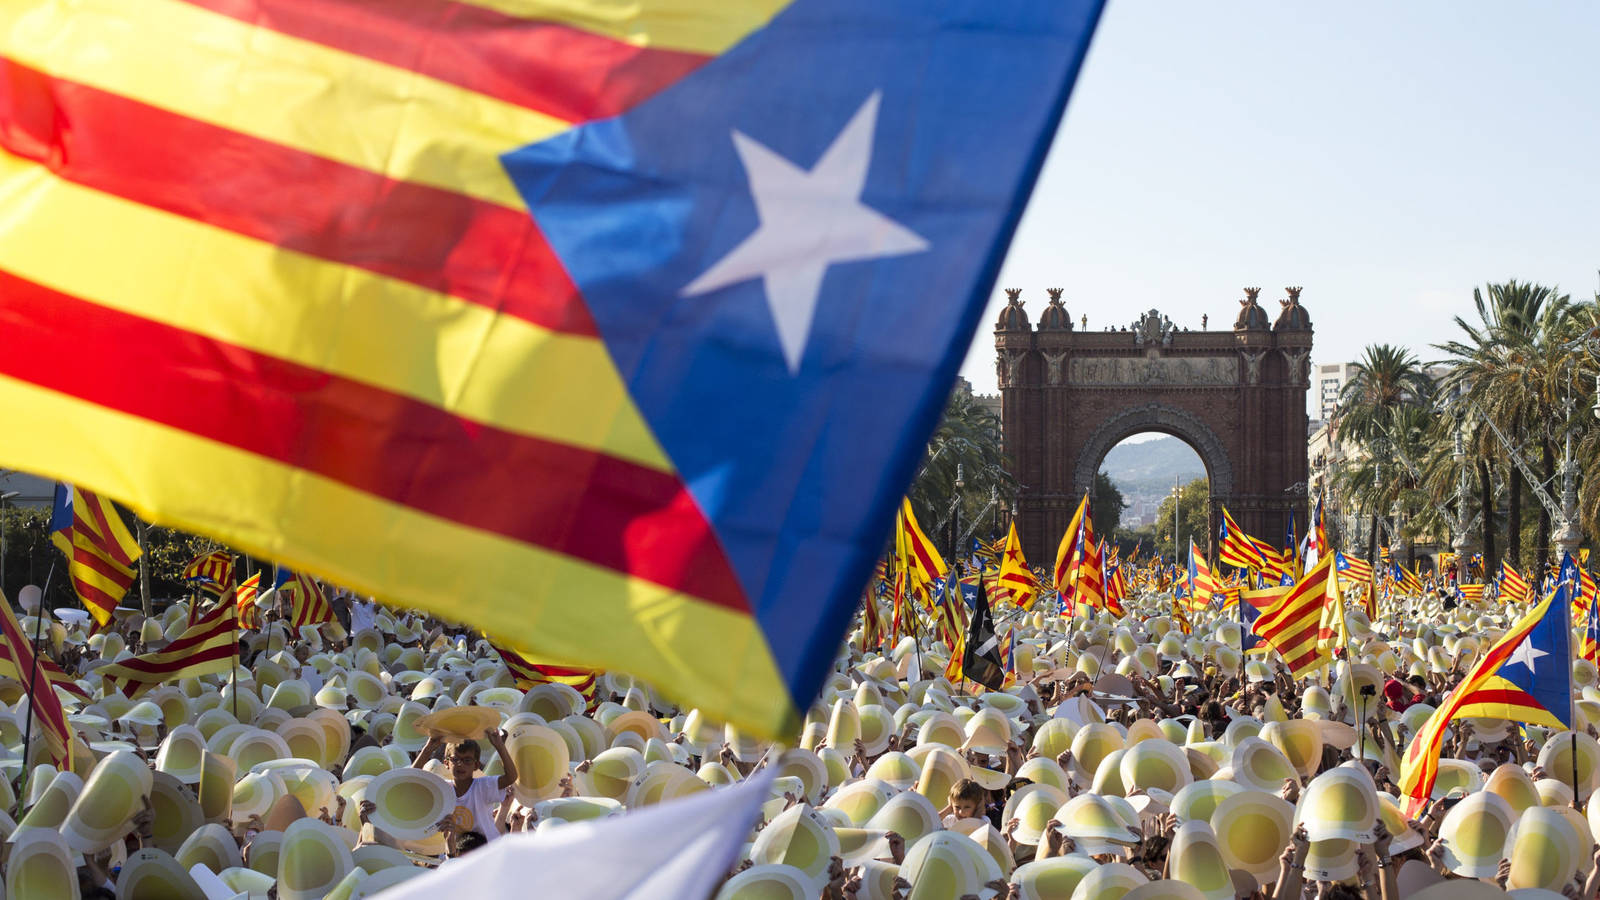 Perché e quando è nato l’indipendentismo in Catalogna